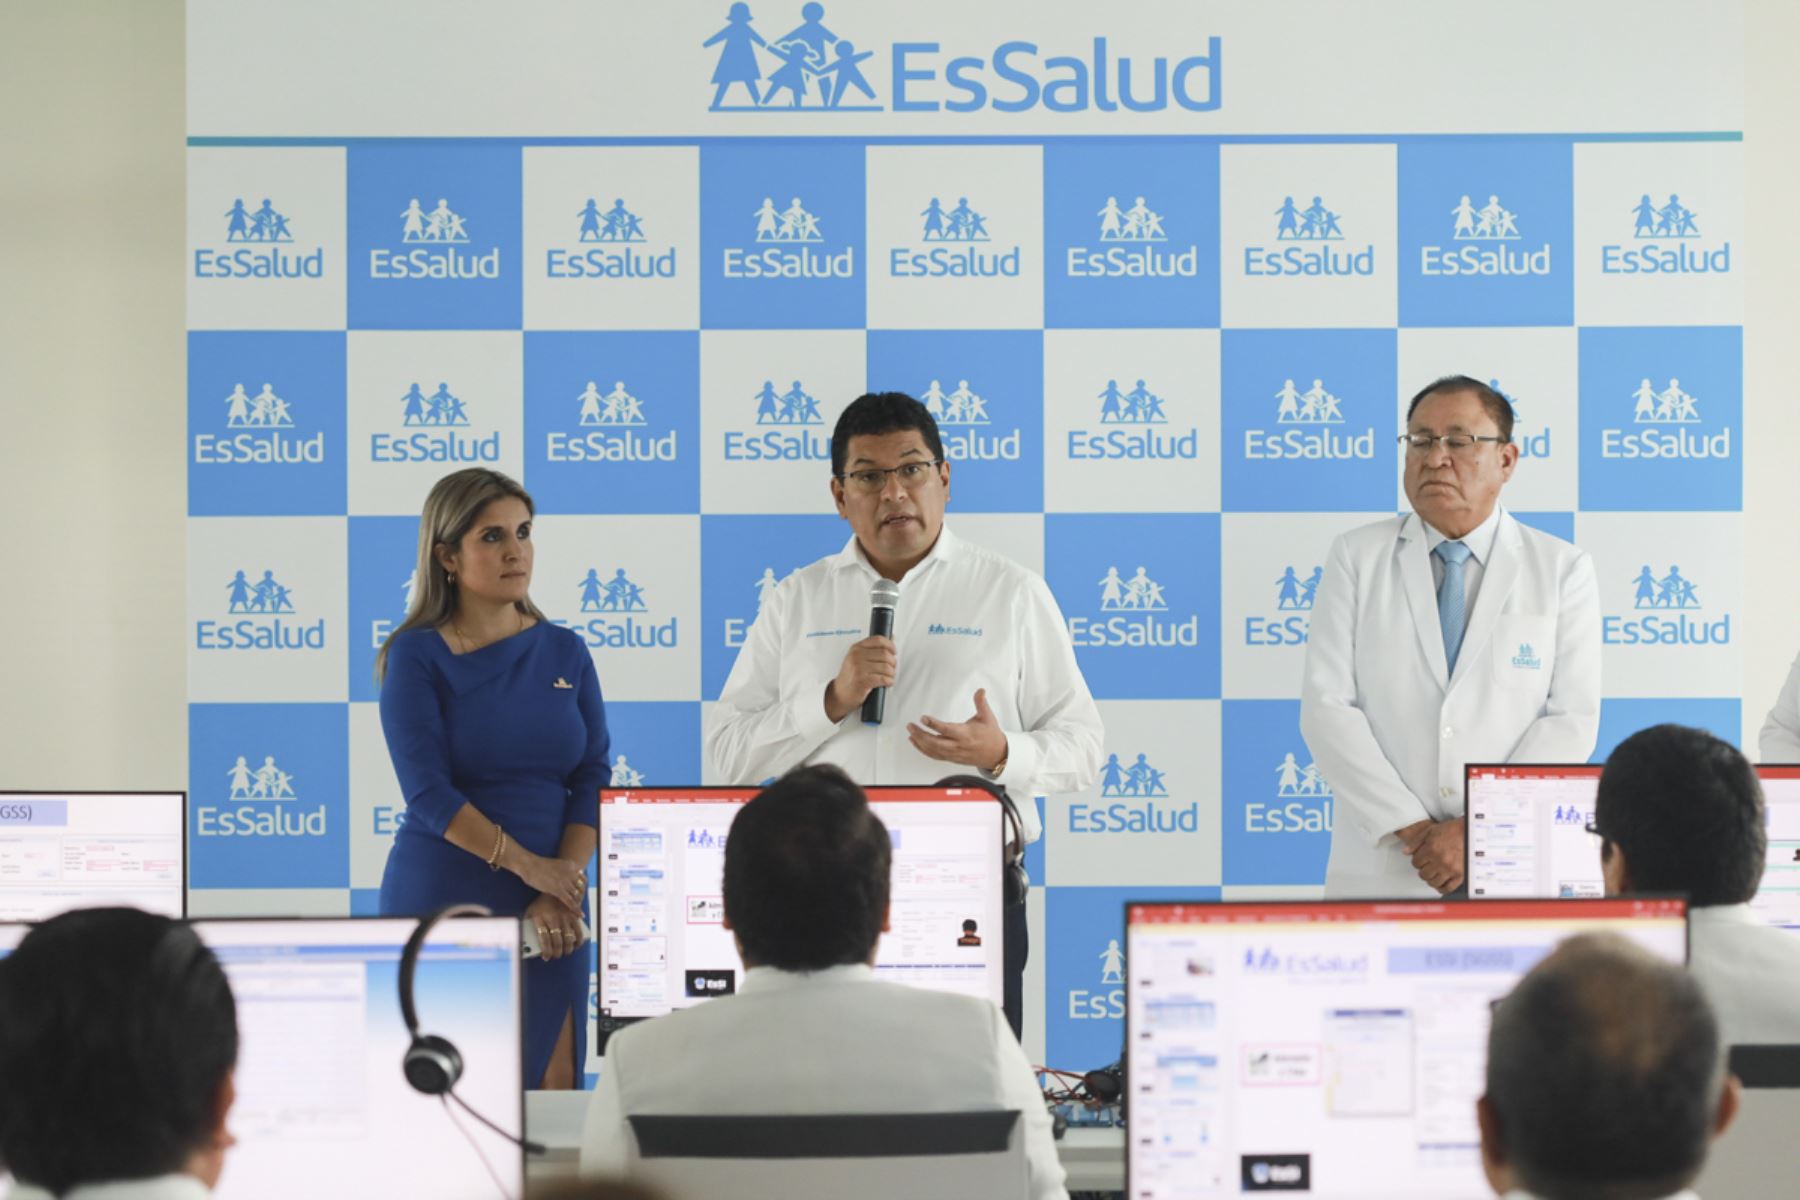 El Centro Regional de Telemedicina de La Libertad proyecta ampliar su oferta de servicios paulatinamente en las próximas semanas. Foto: ANDINA/EsSalud